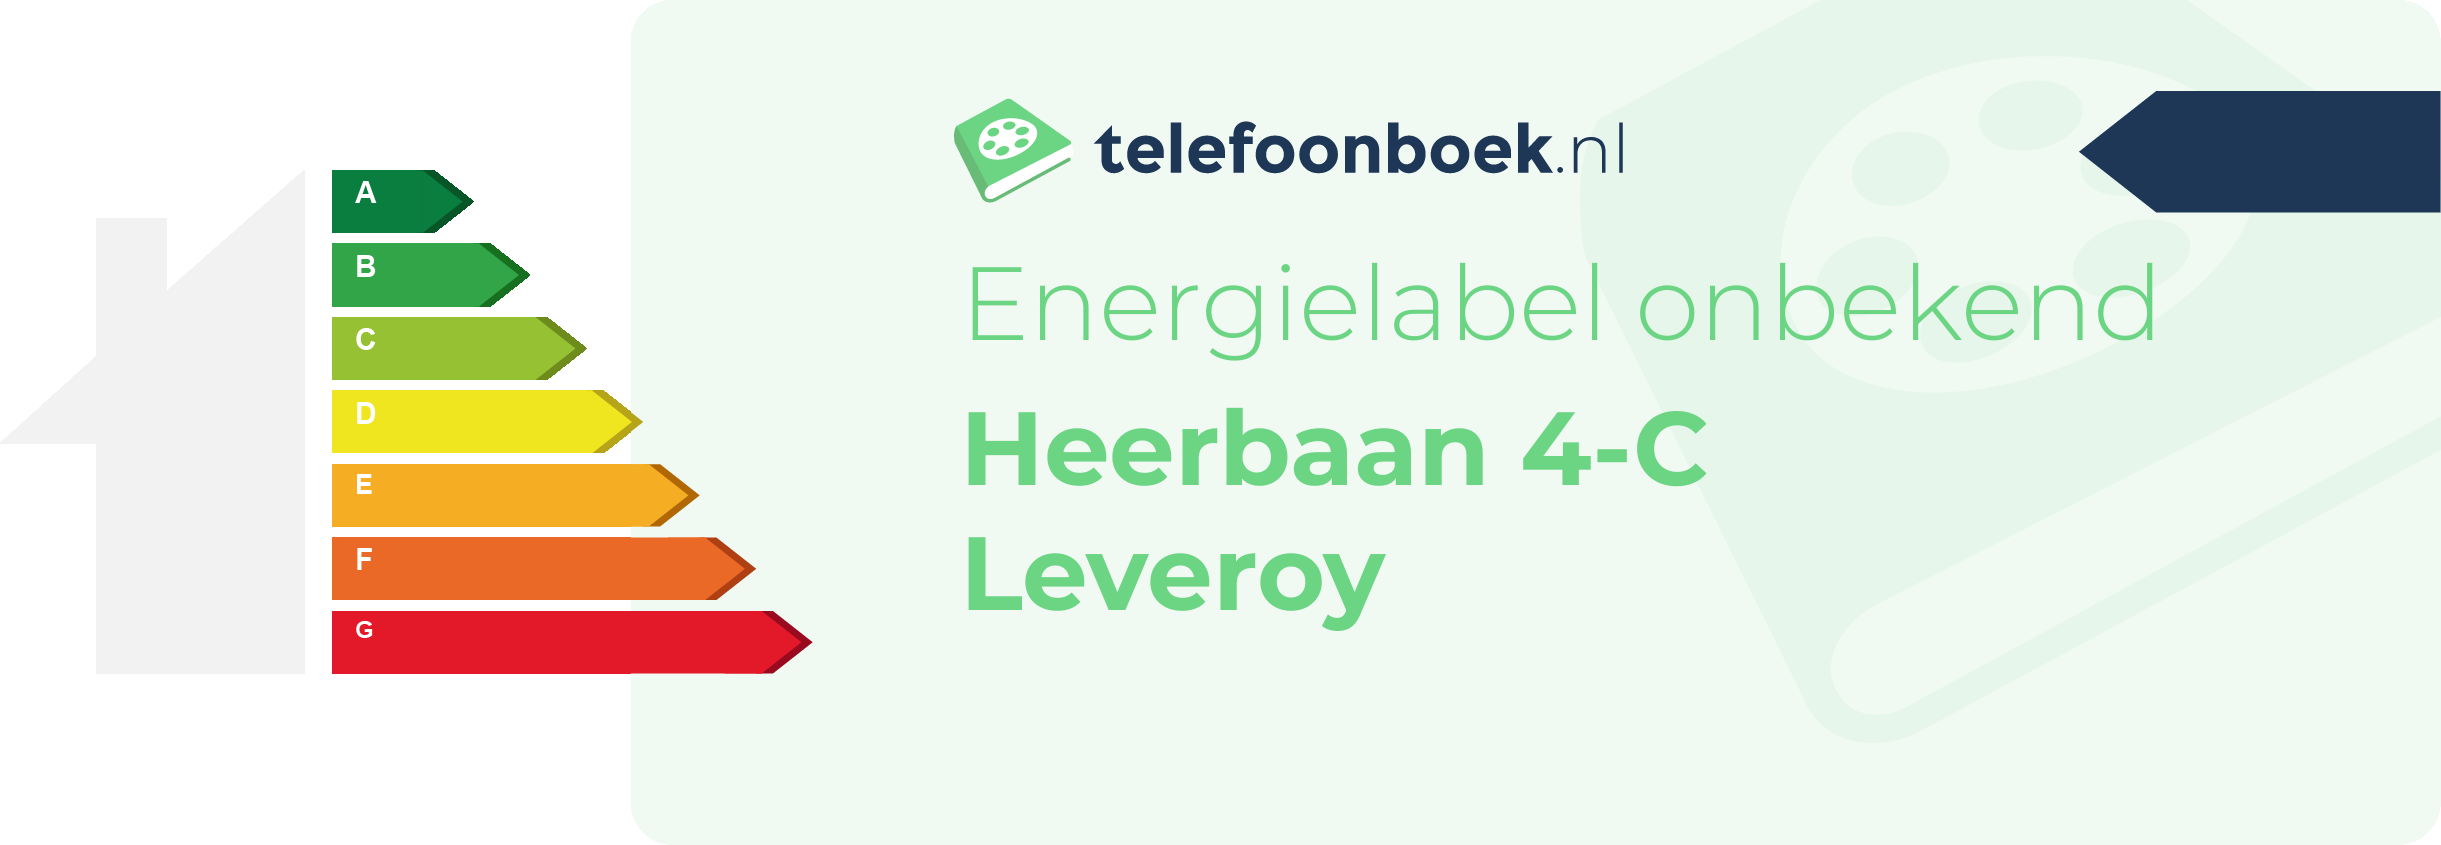 Energielabel Heerbaan 4-C Leveroy